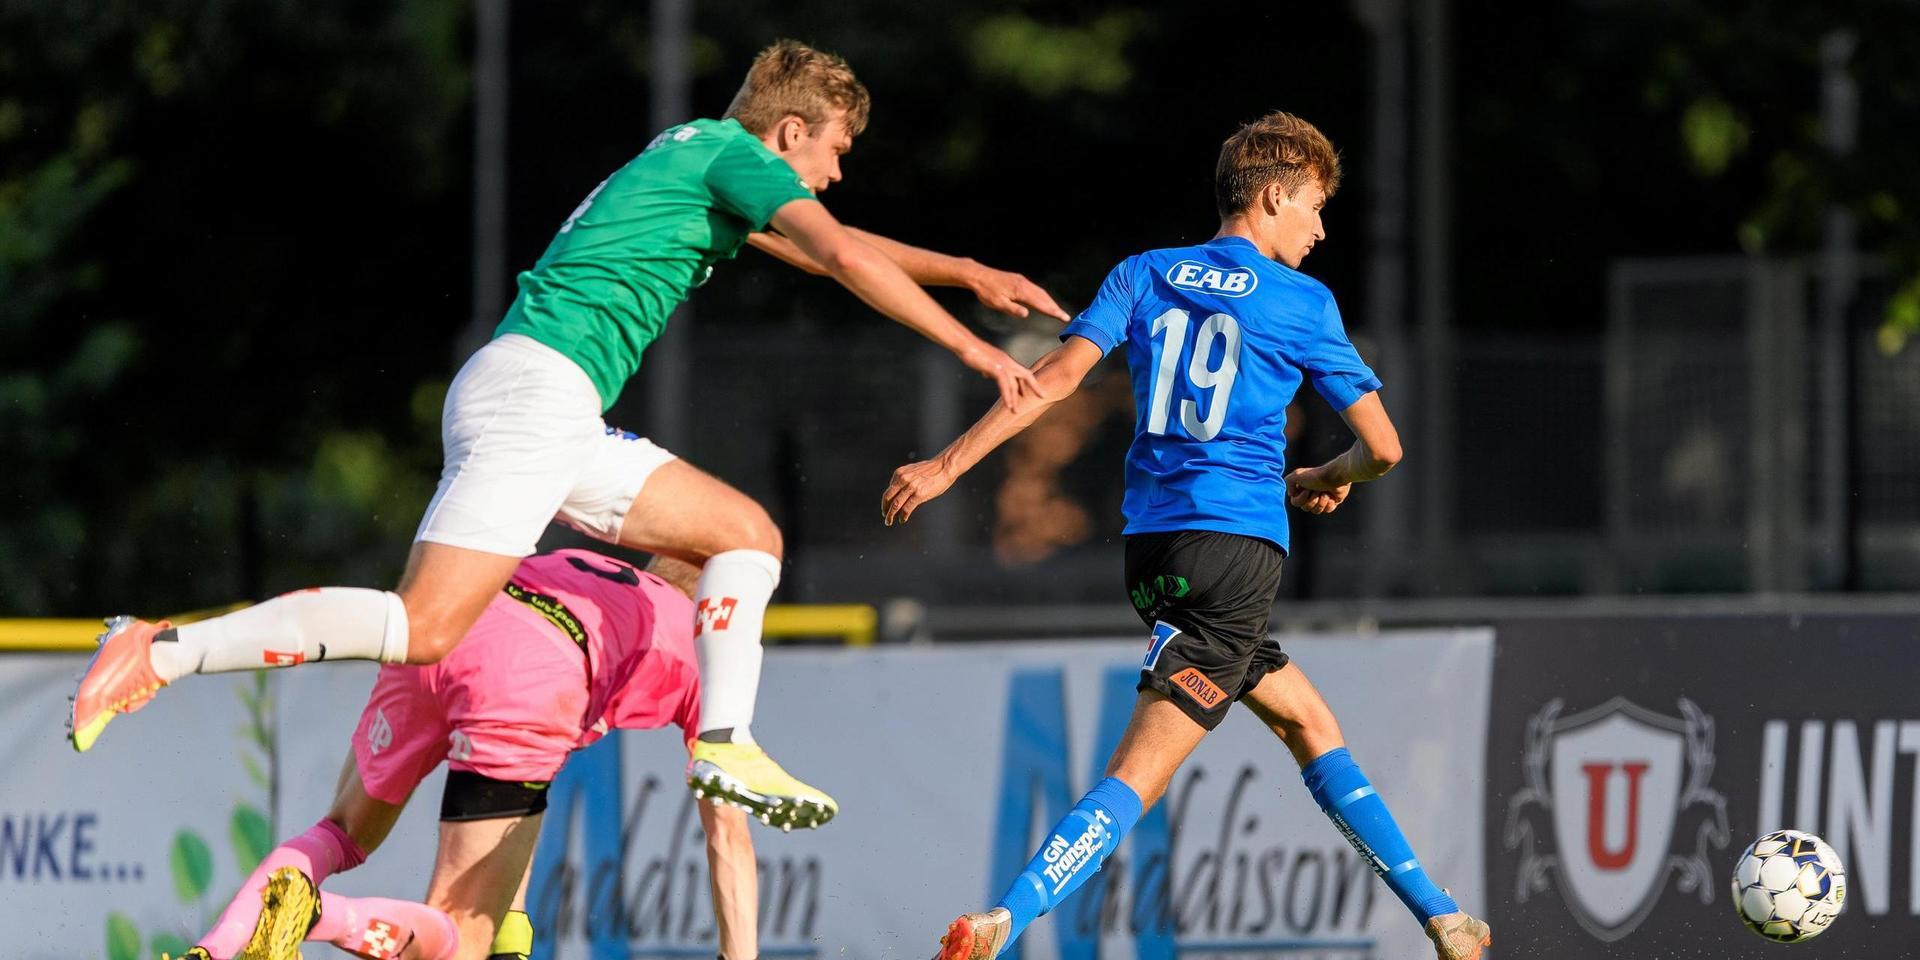 Skyttekungen Rasmus Wiedesheim-Paul fullbordar sitt hat trick när han lurar J Södra-försvaret och rullar in 3–0 till sitt HBK.